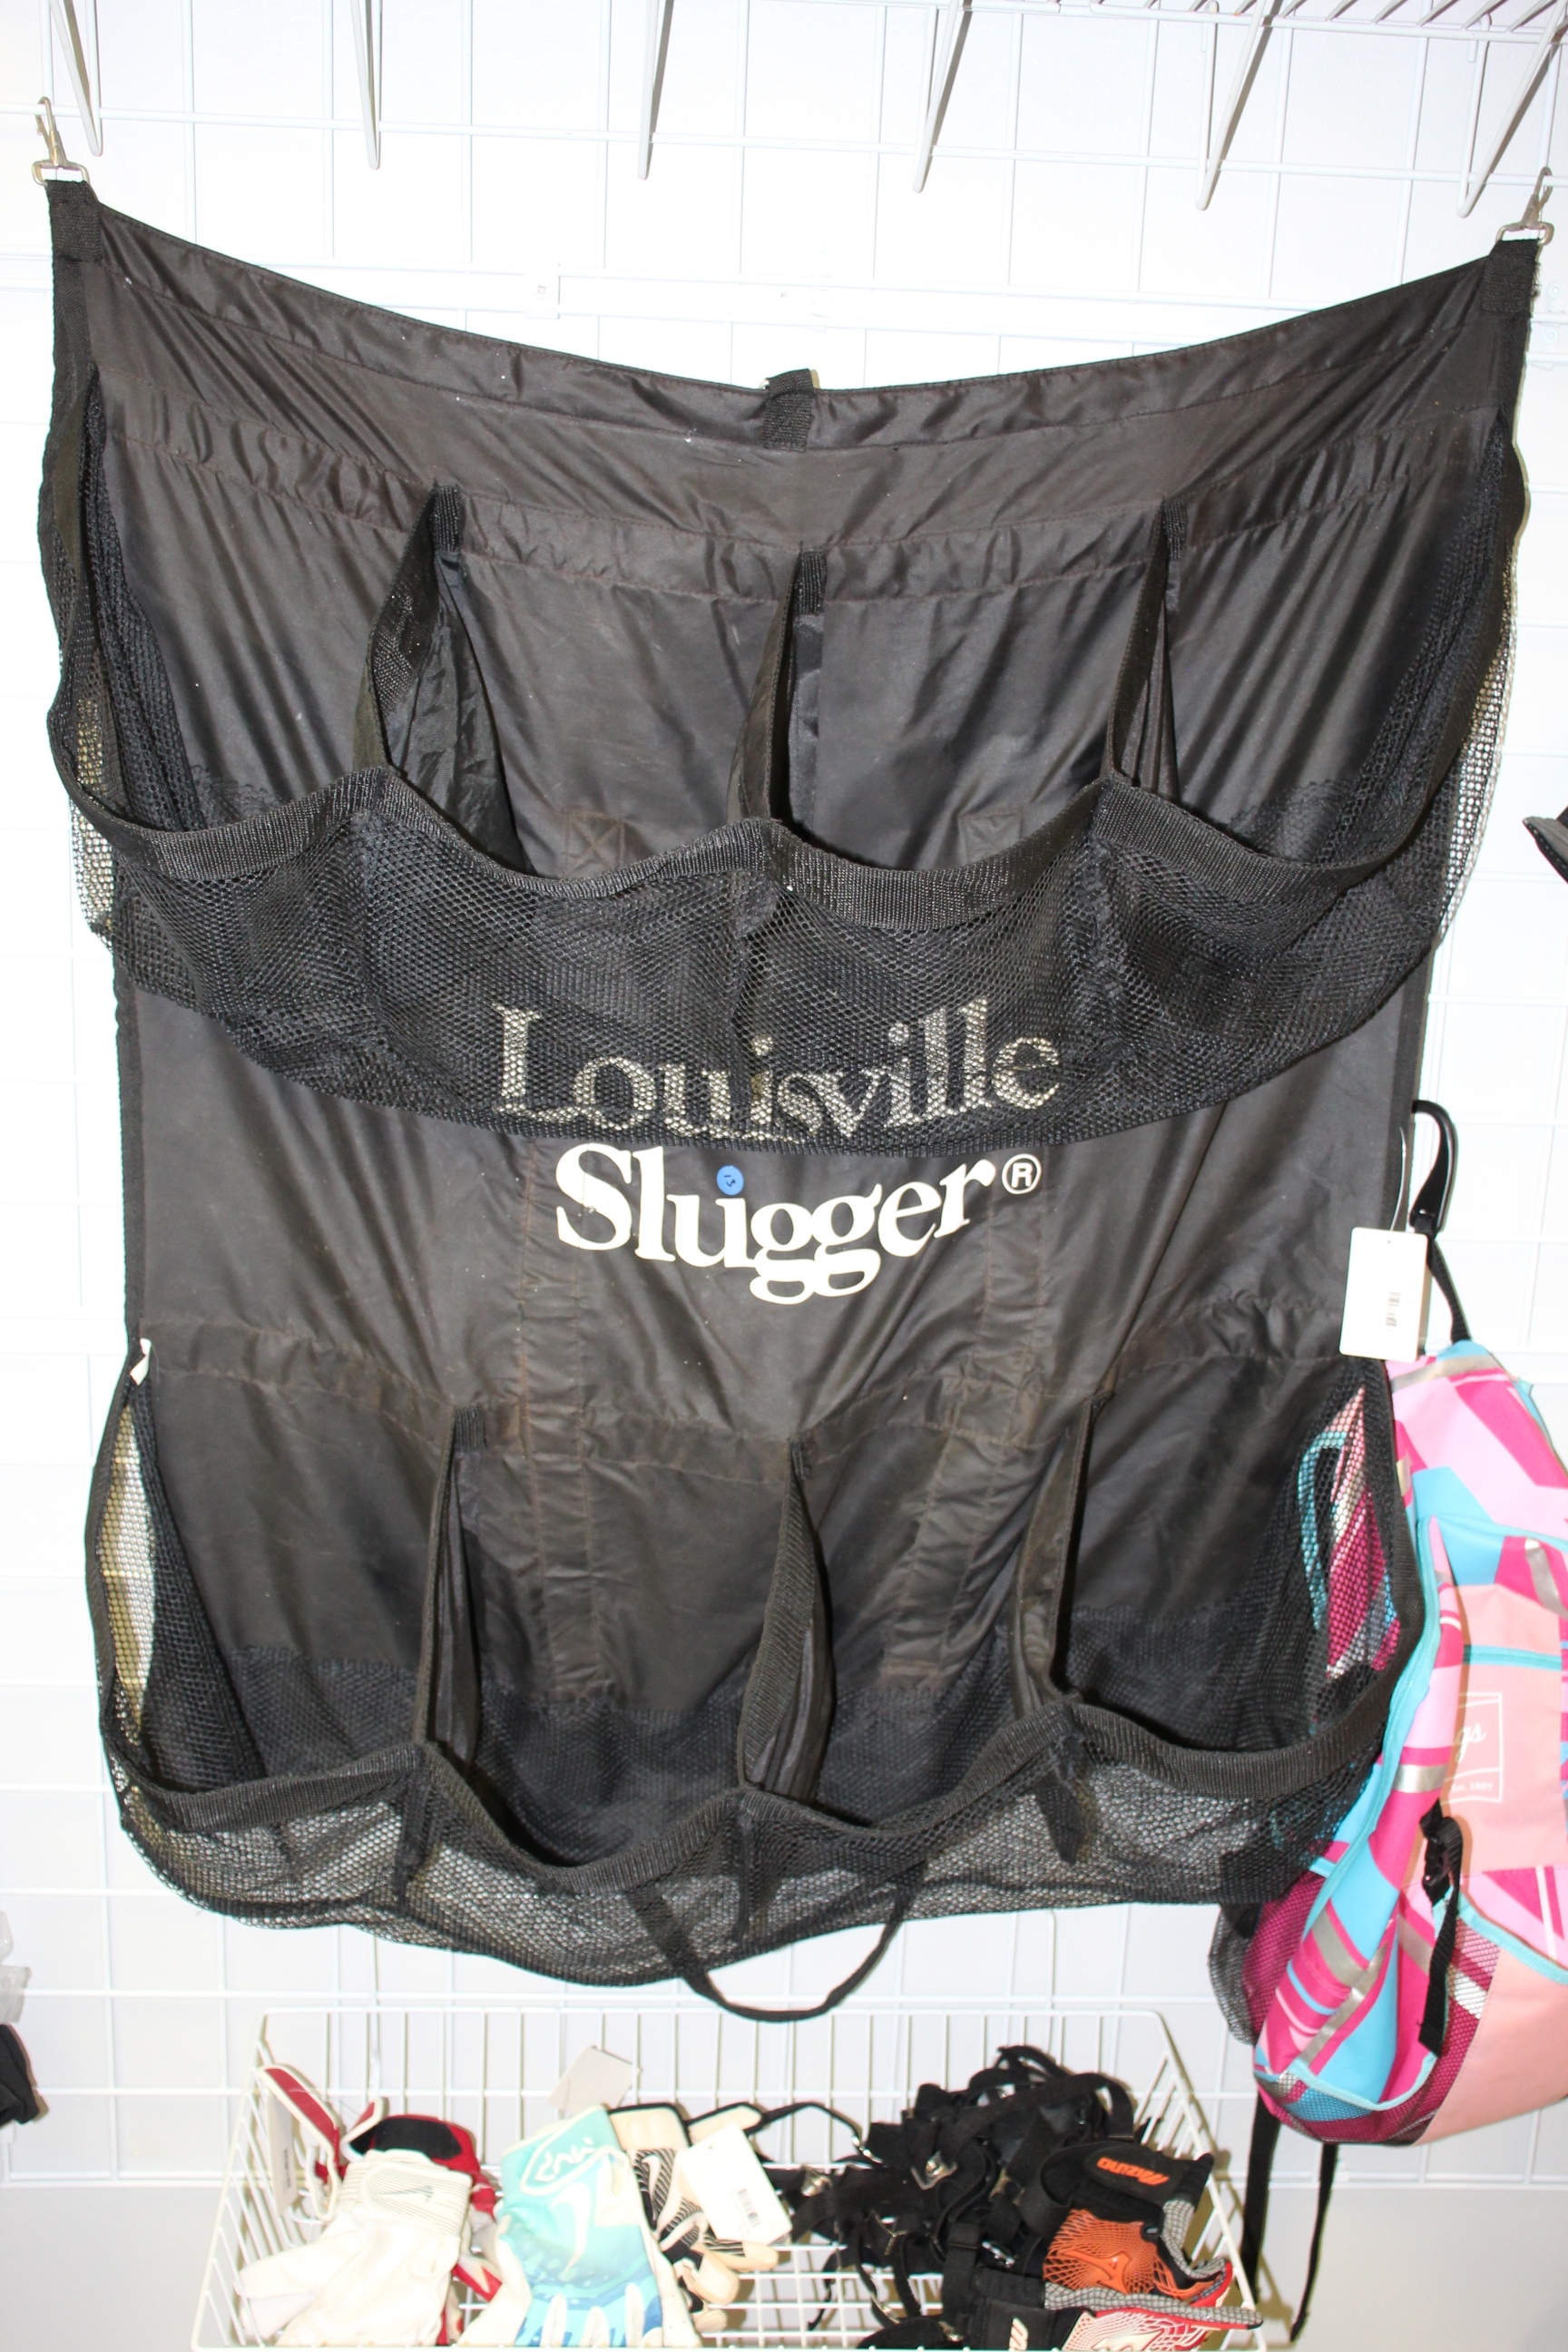 Used Louisville Slugger Coach's Helmet Bag